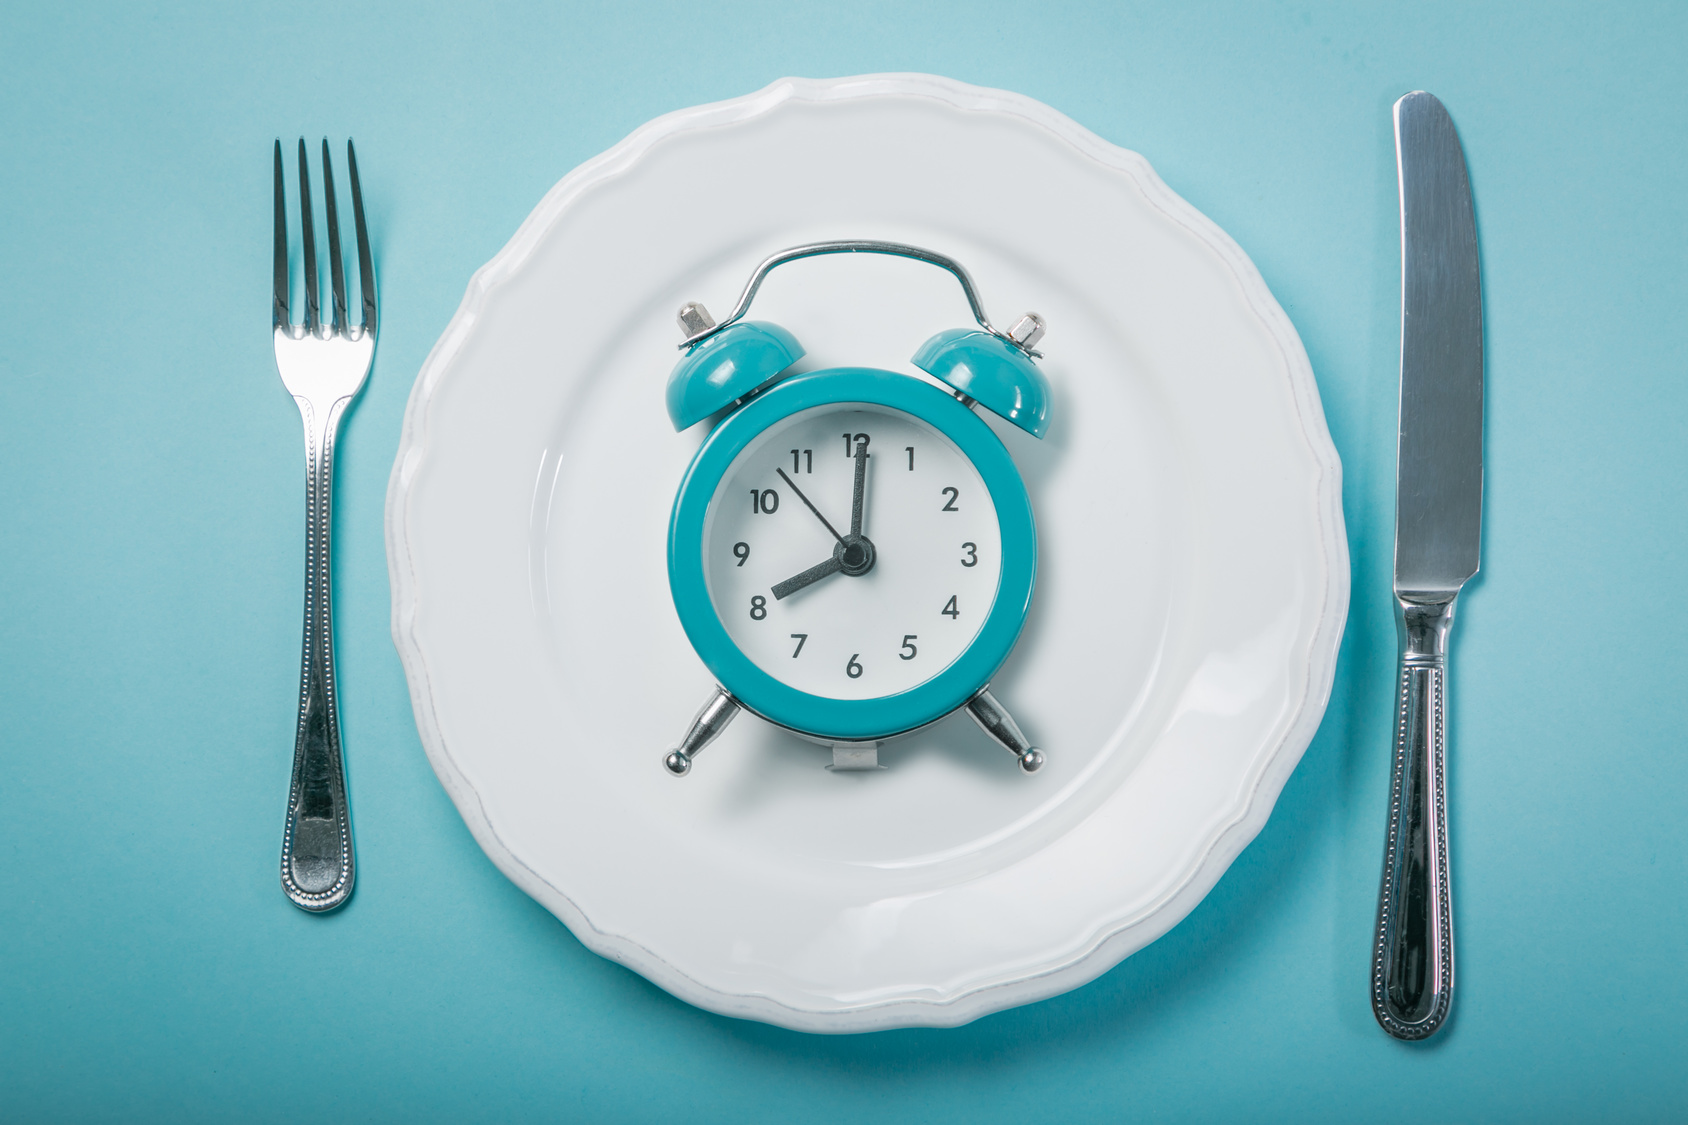 Chronutrition : à quelle heure le corps stocke-t-il le plus de calories ? © anaumenko, Fotolia